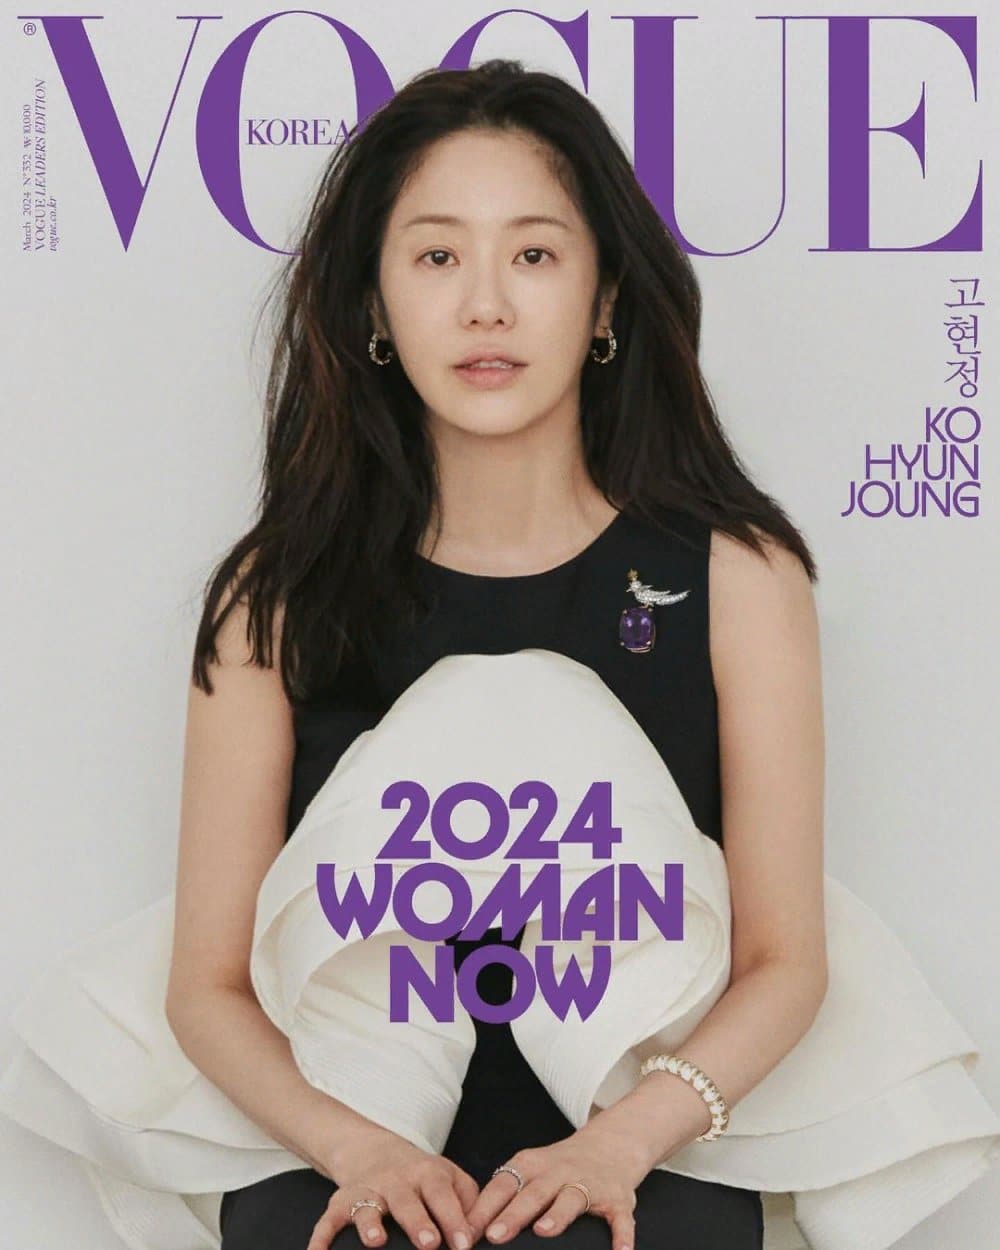 Журнал "Vogue Korea" представил 24 потрясающих женщины для обложек своего мартовского выпуска